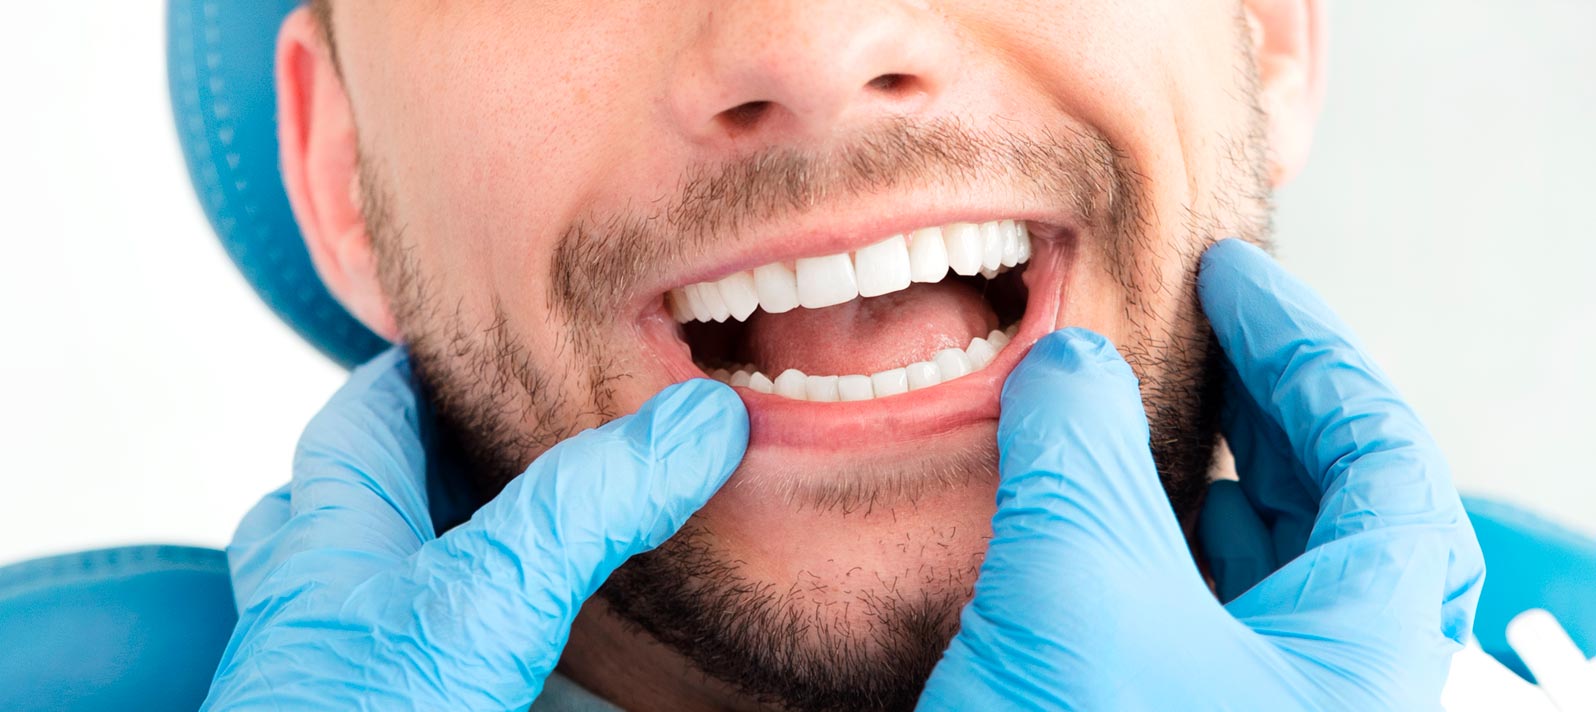 Revisión dental de dientes y encías